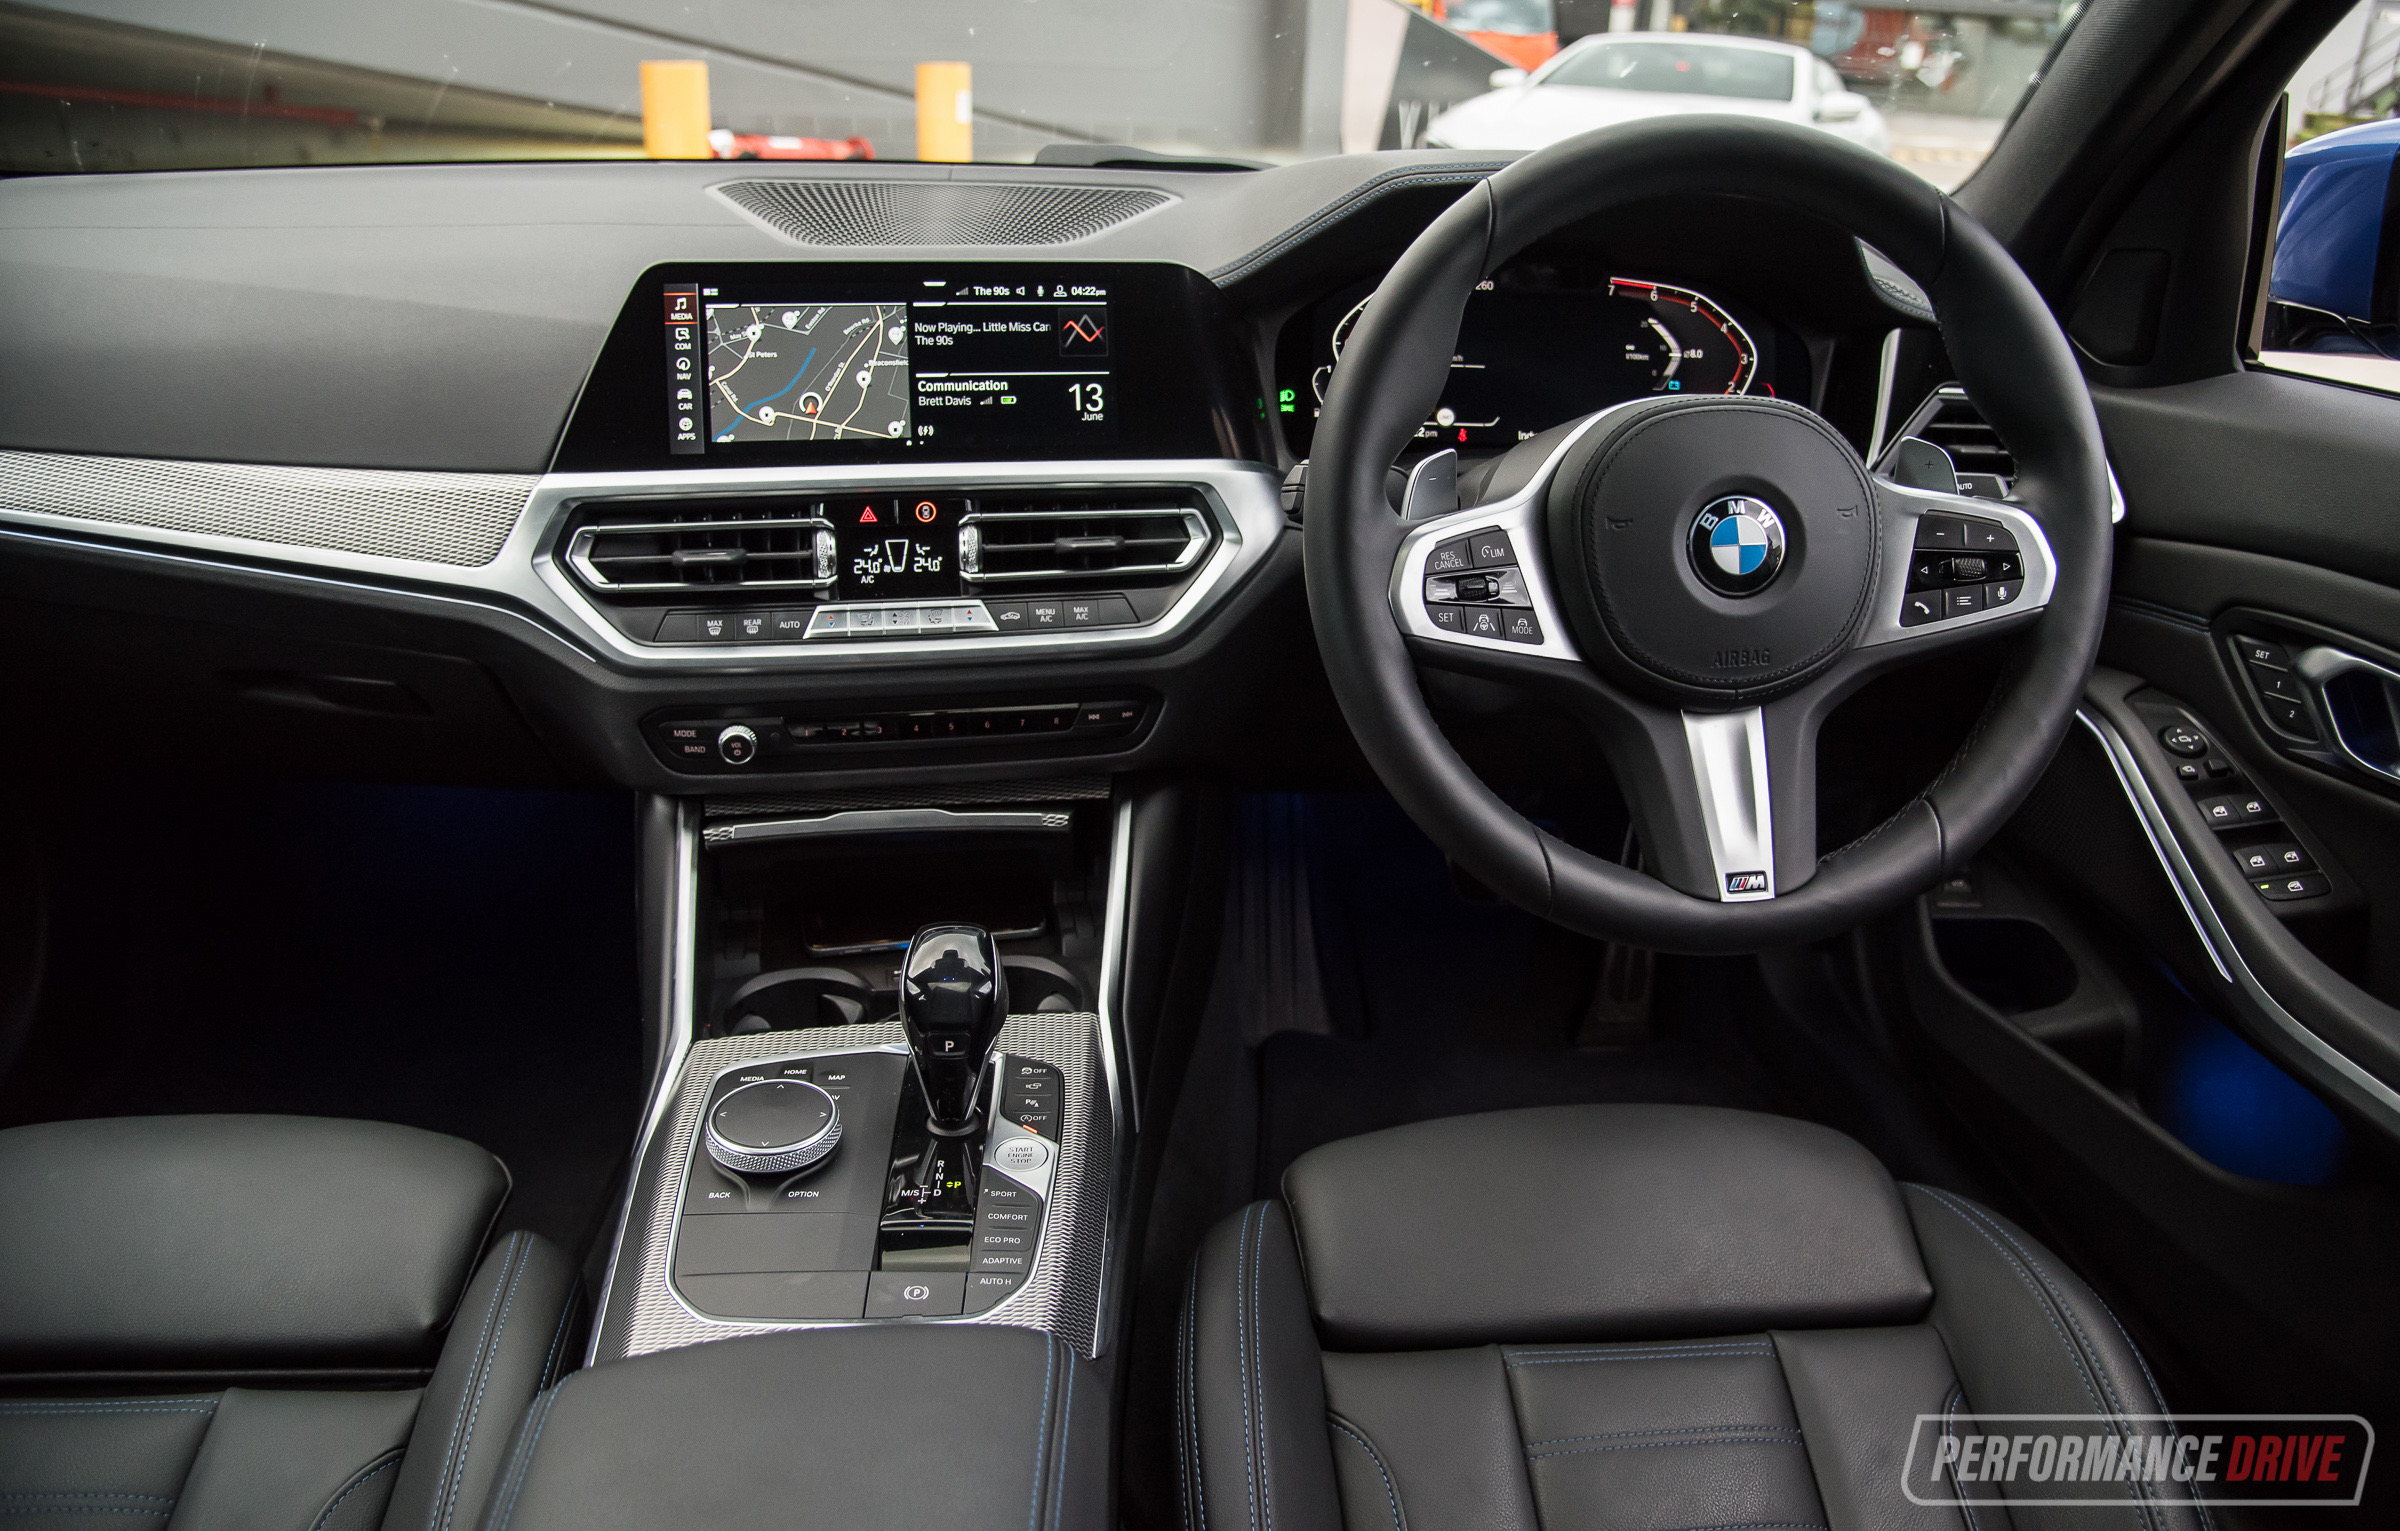 Tampilan Interior BMW 330i M Sport yang Mbah Dukun Banget Bikin Mupeng